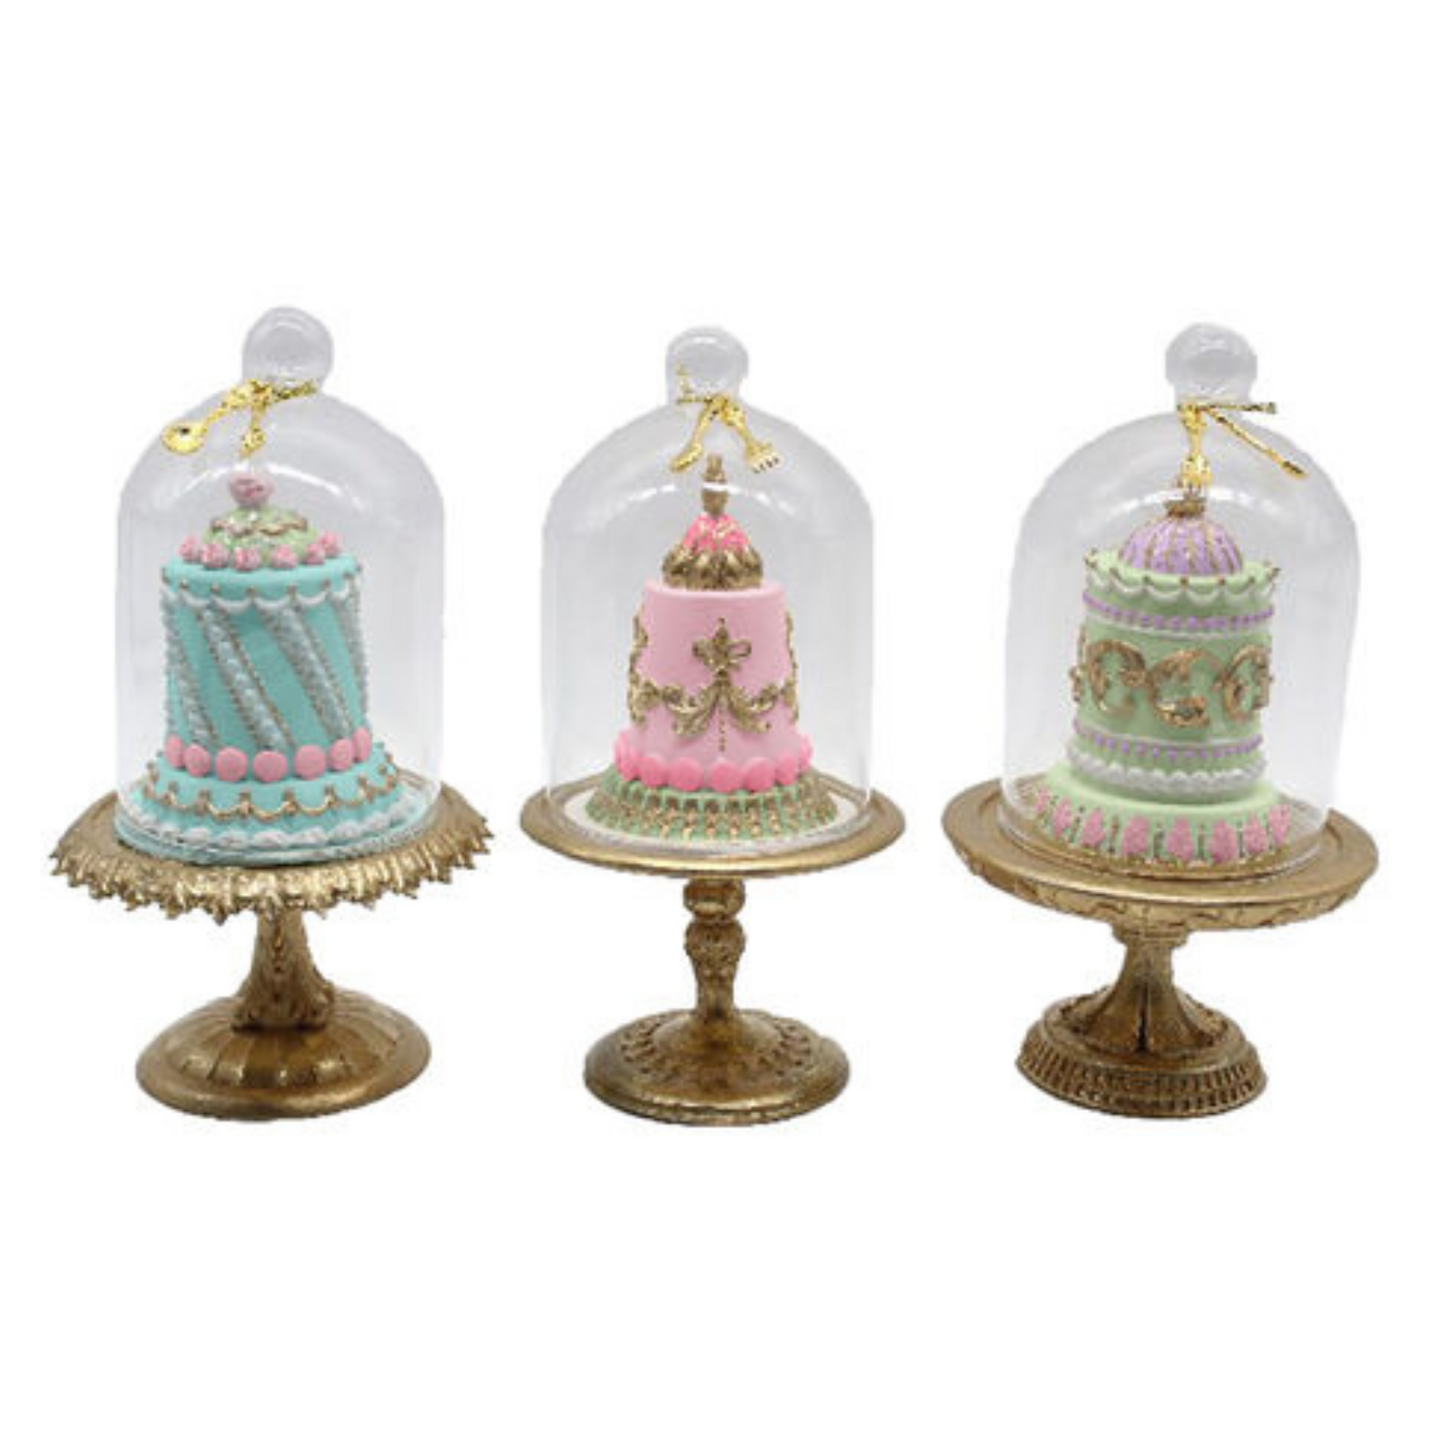 Cakes in Cloche Ornaments /3